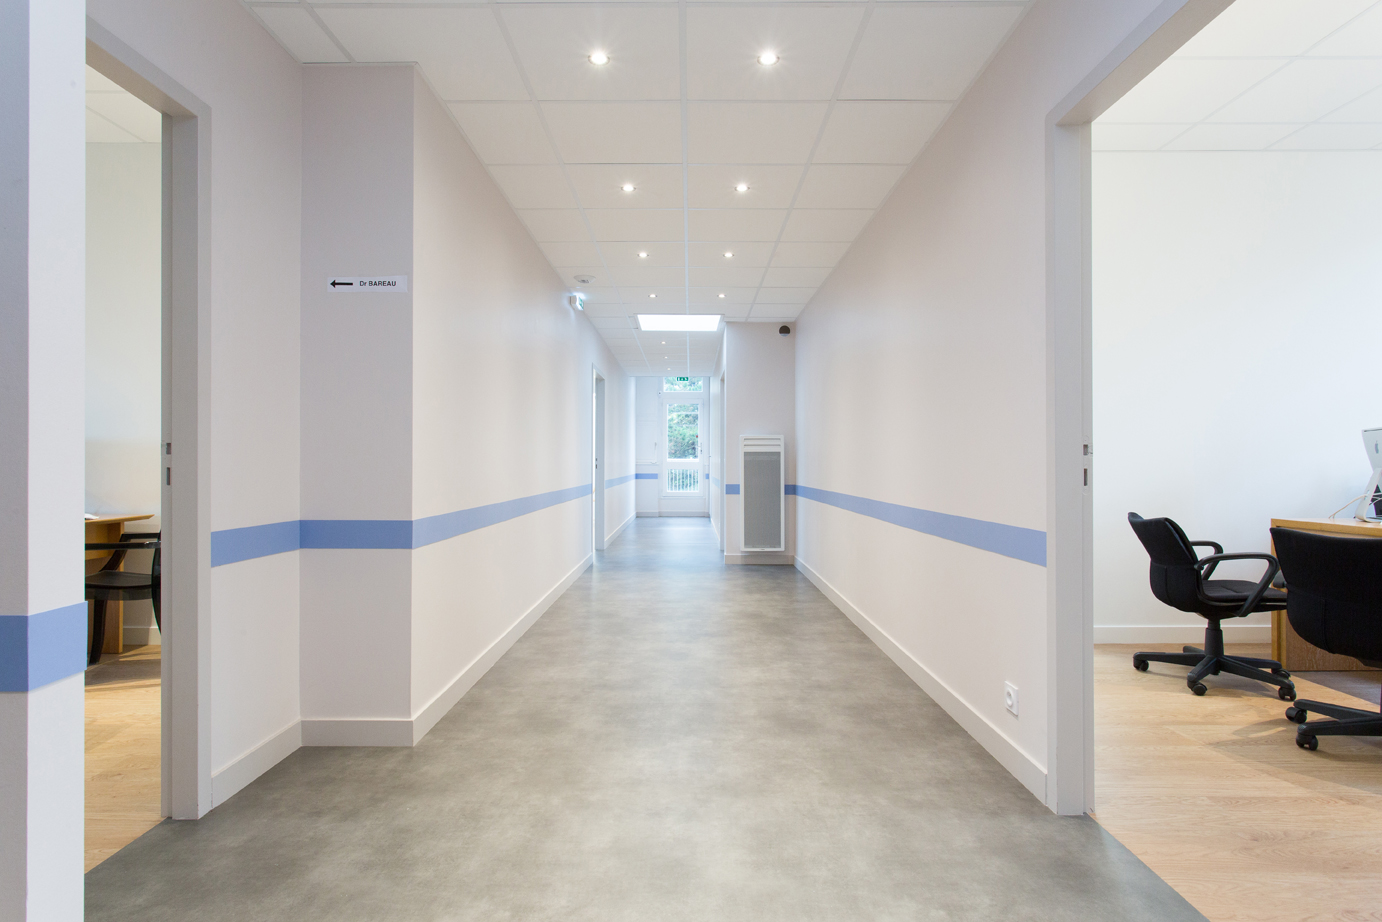 Couloir blanc avec une ligne bleue menant aux différents bureaux.